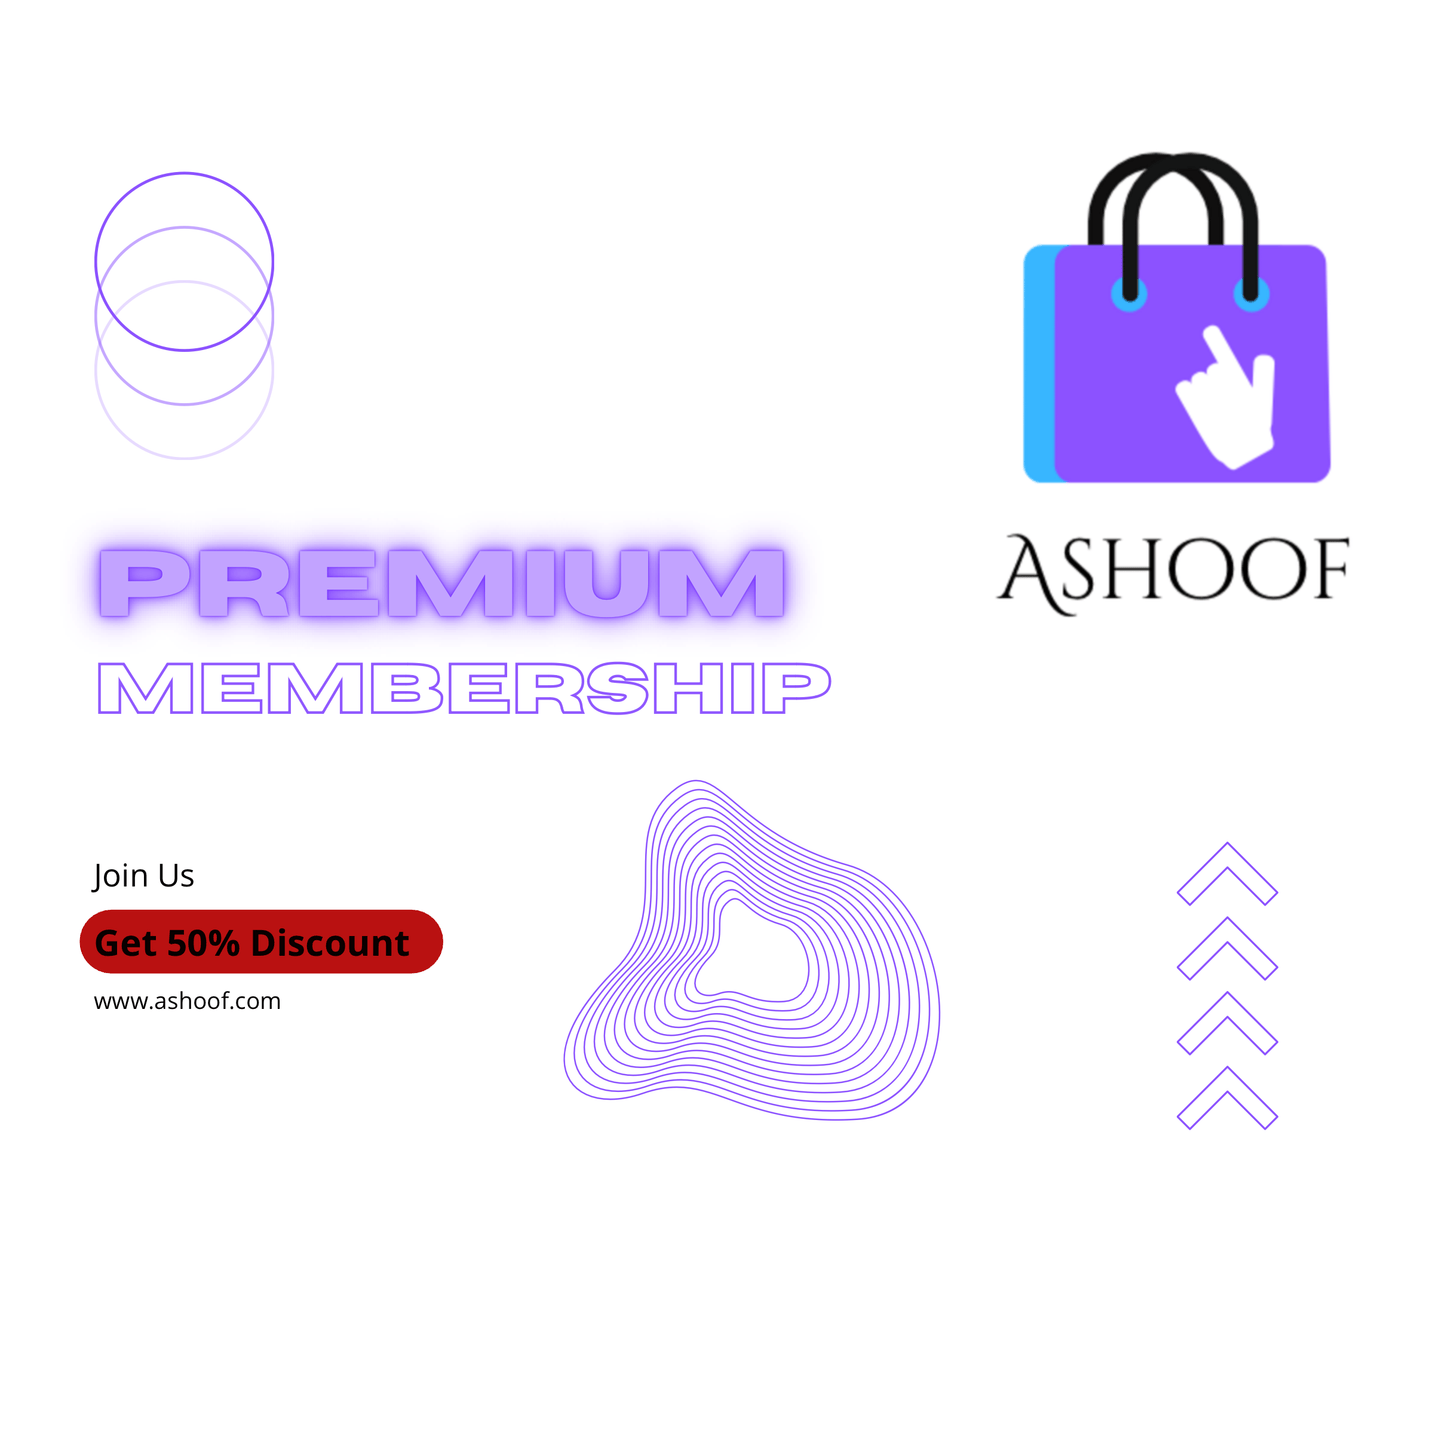 Premium Memberships